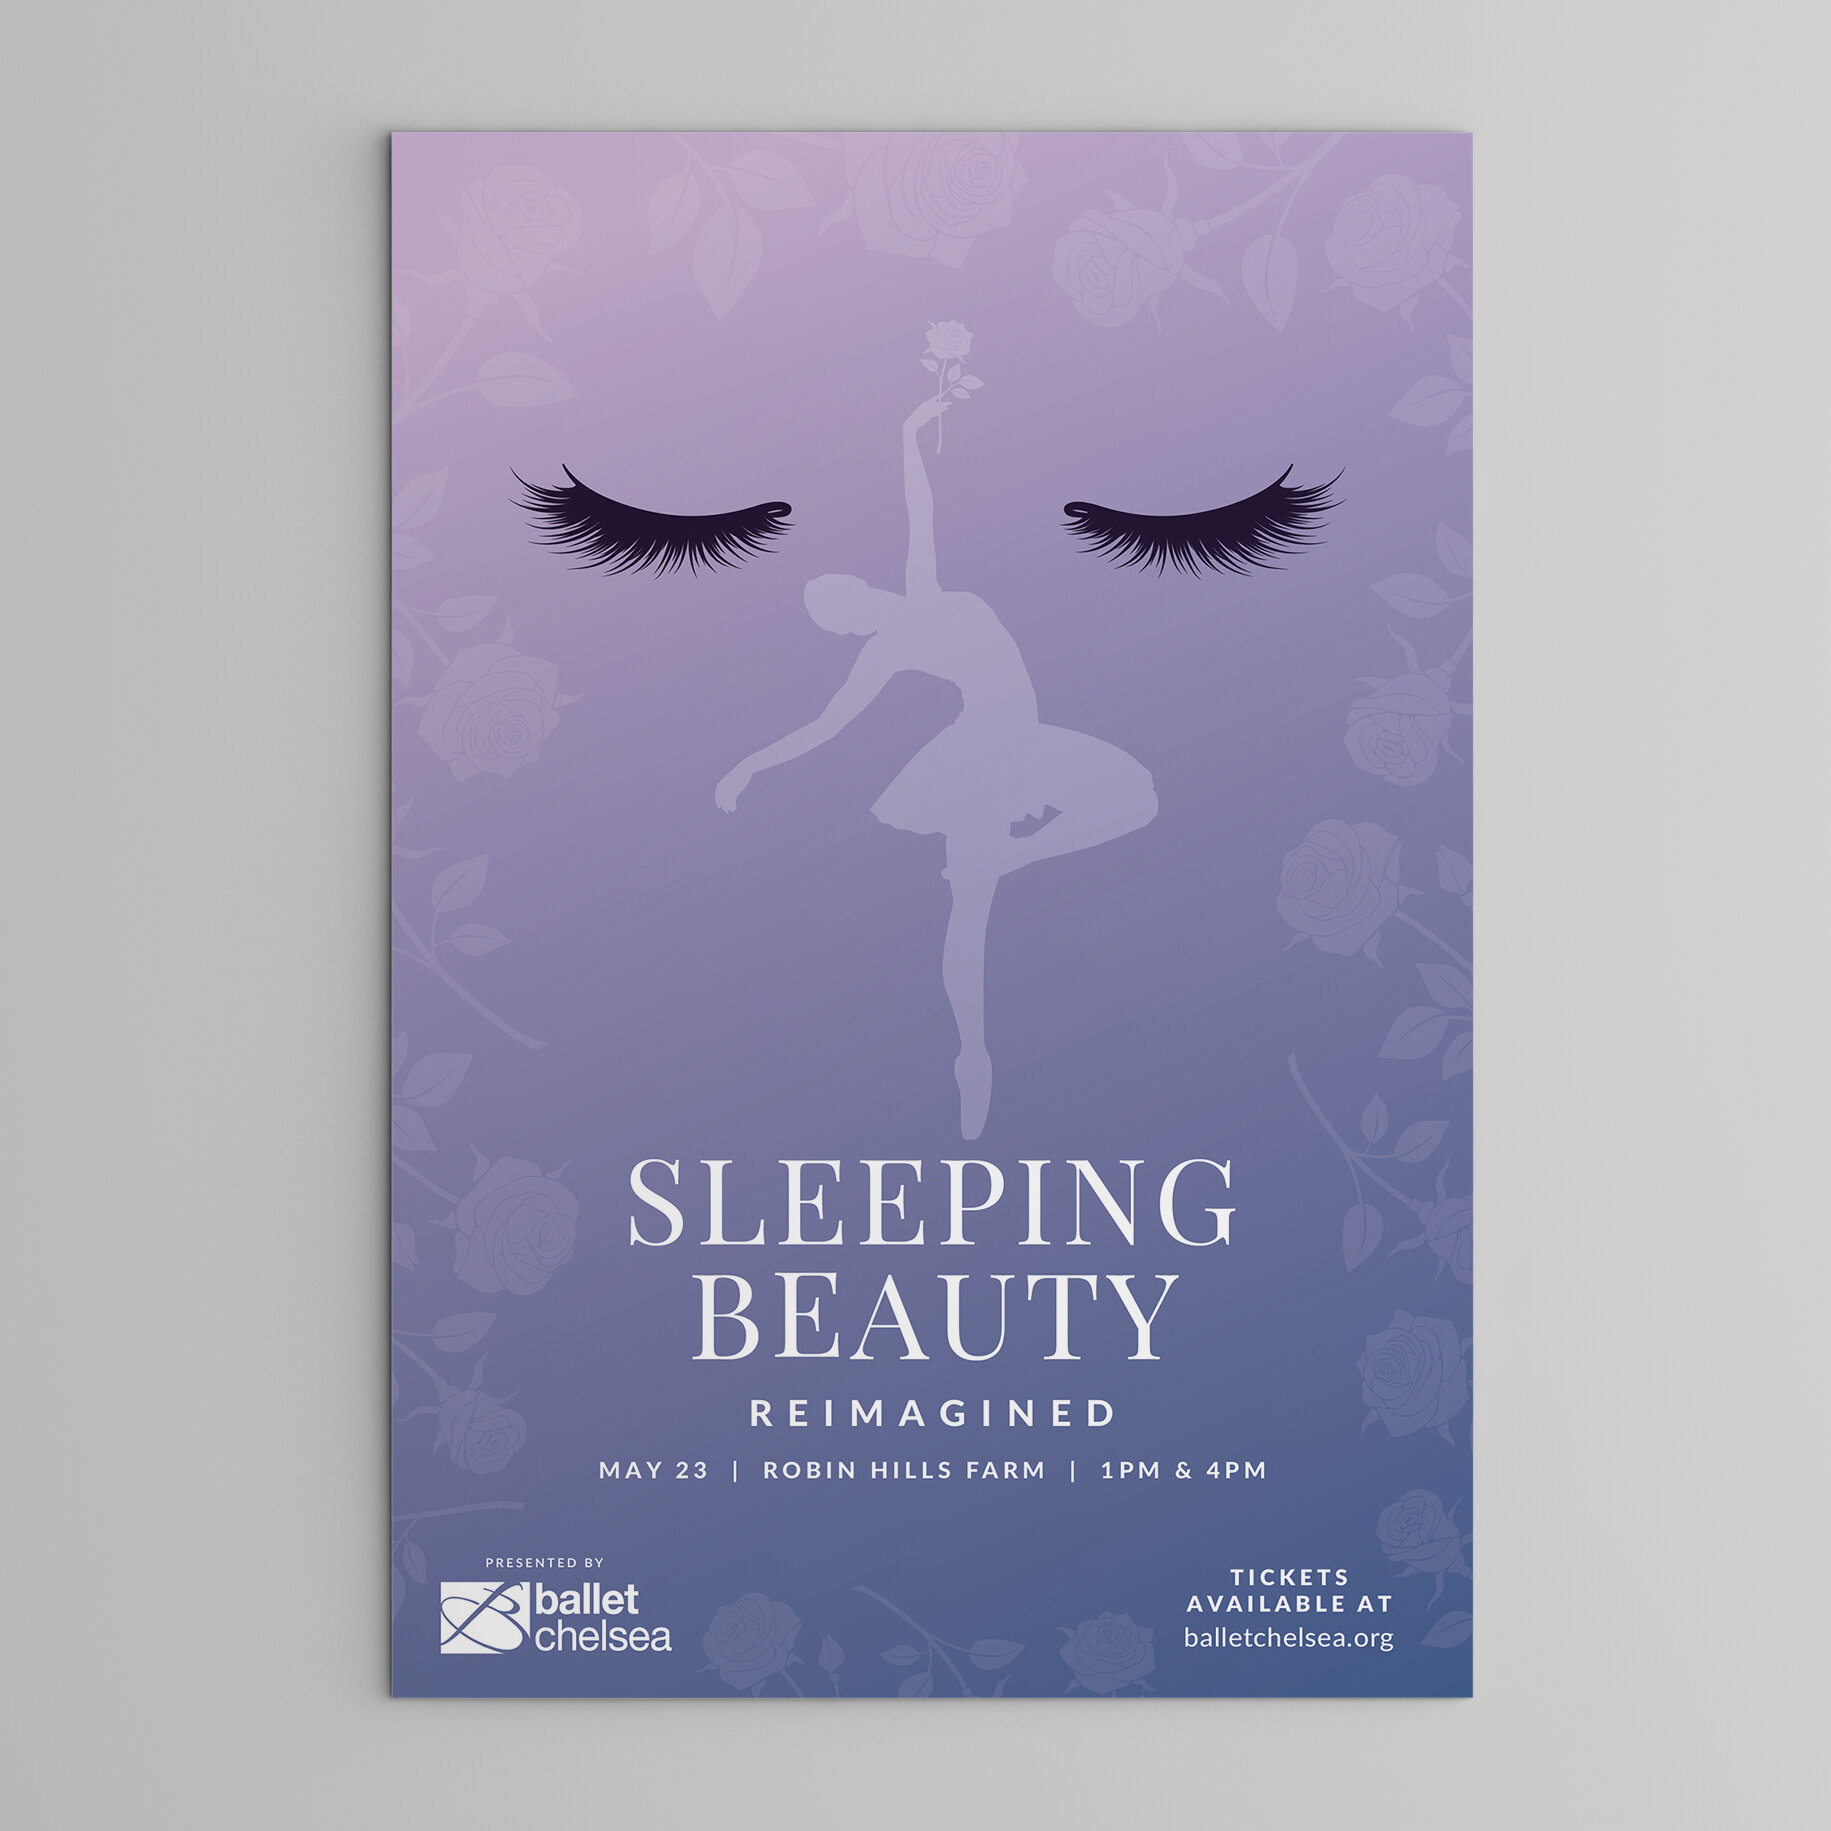 SleepingBeauty_Poster.jpg